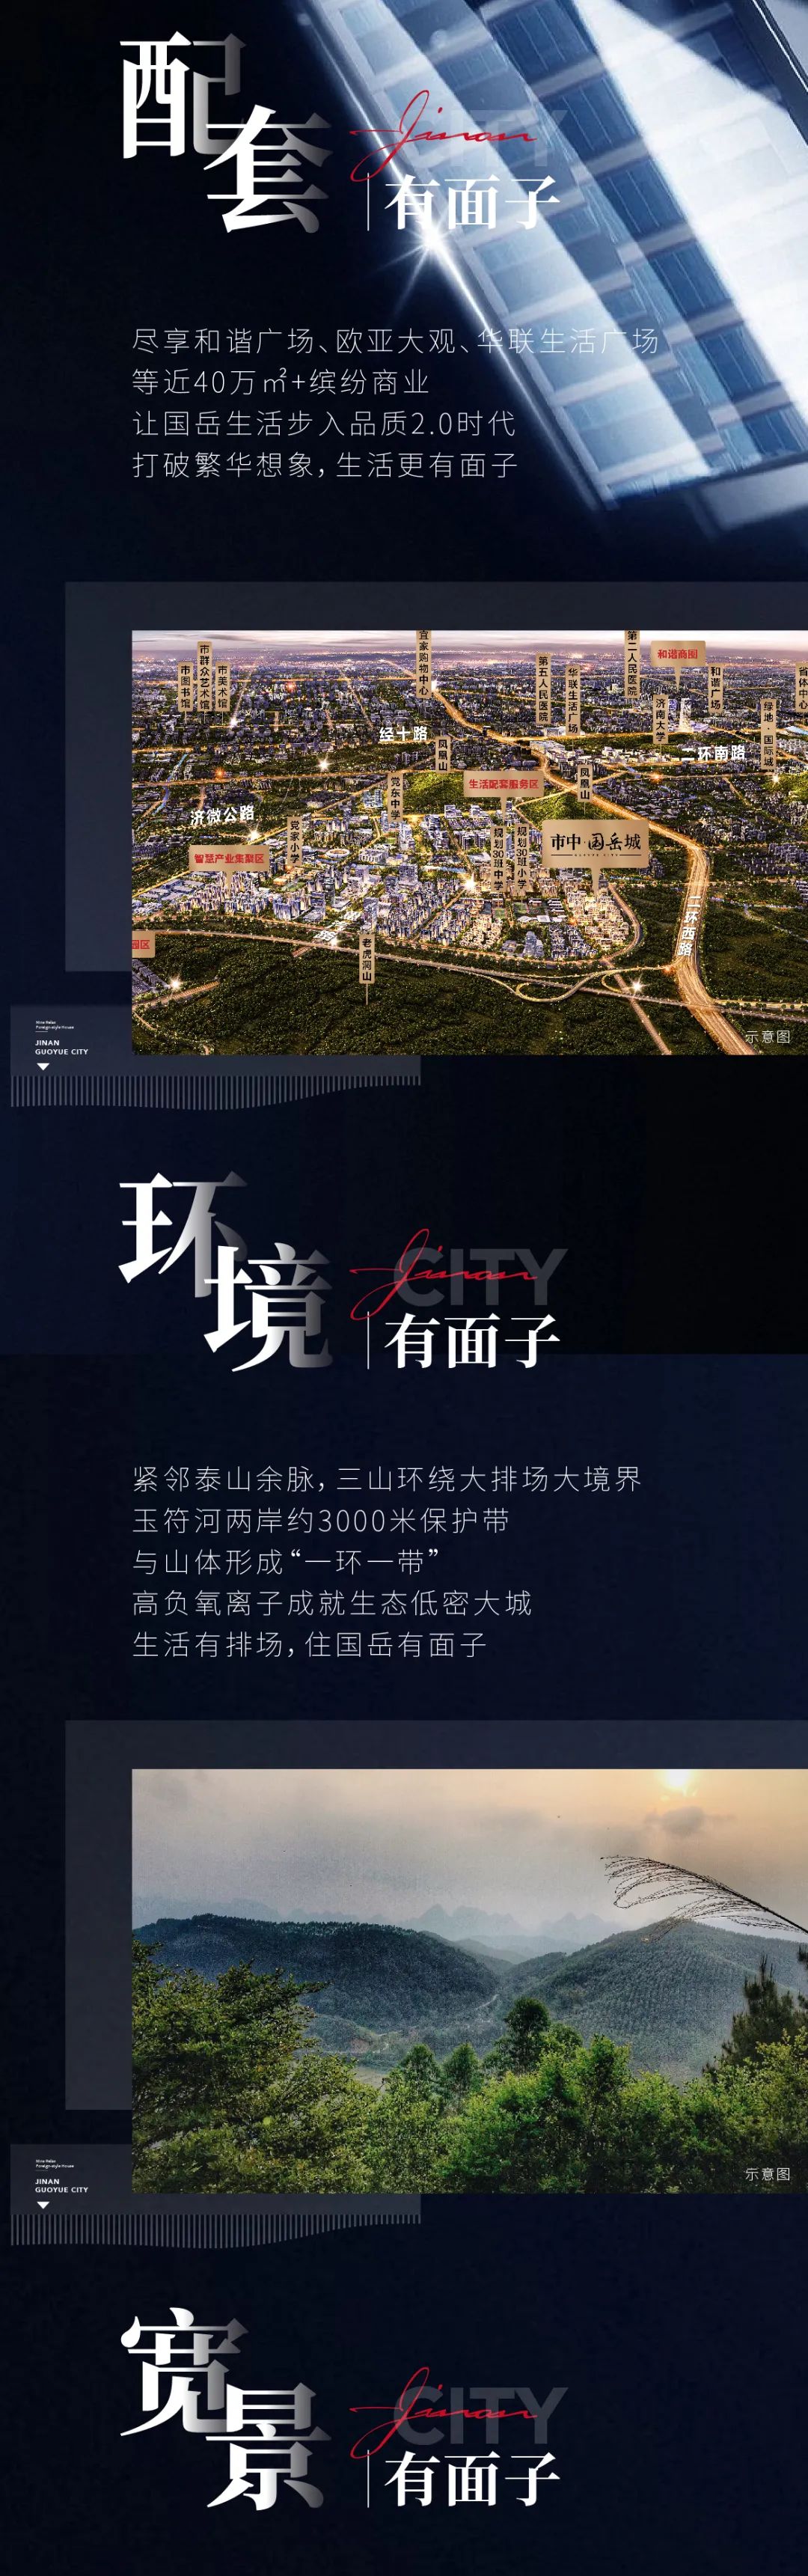 市中·国岳城占位济南西兴战略要地，筑极生态、繁华、园林一应俱全的大城时代人居